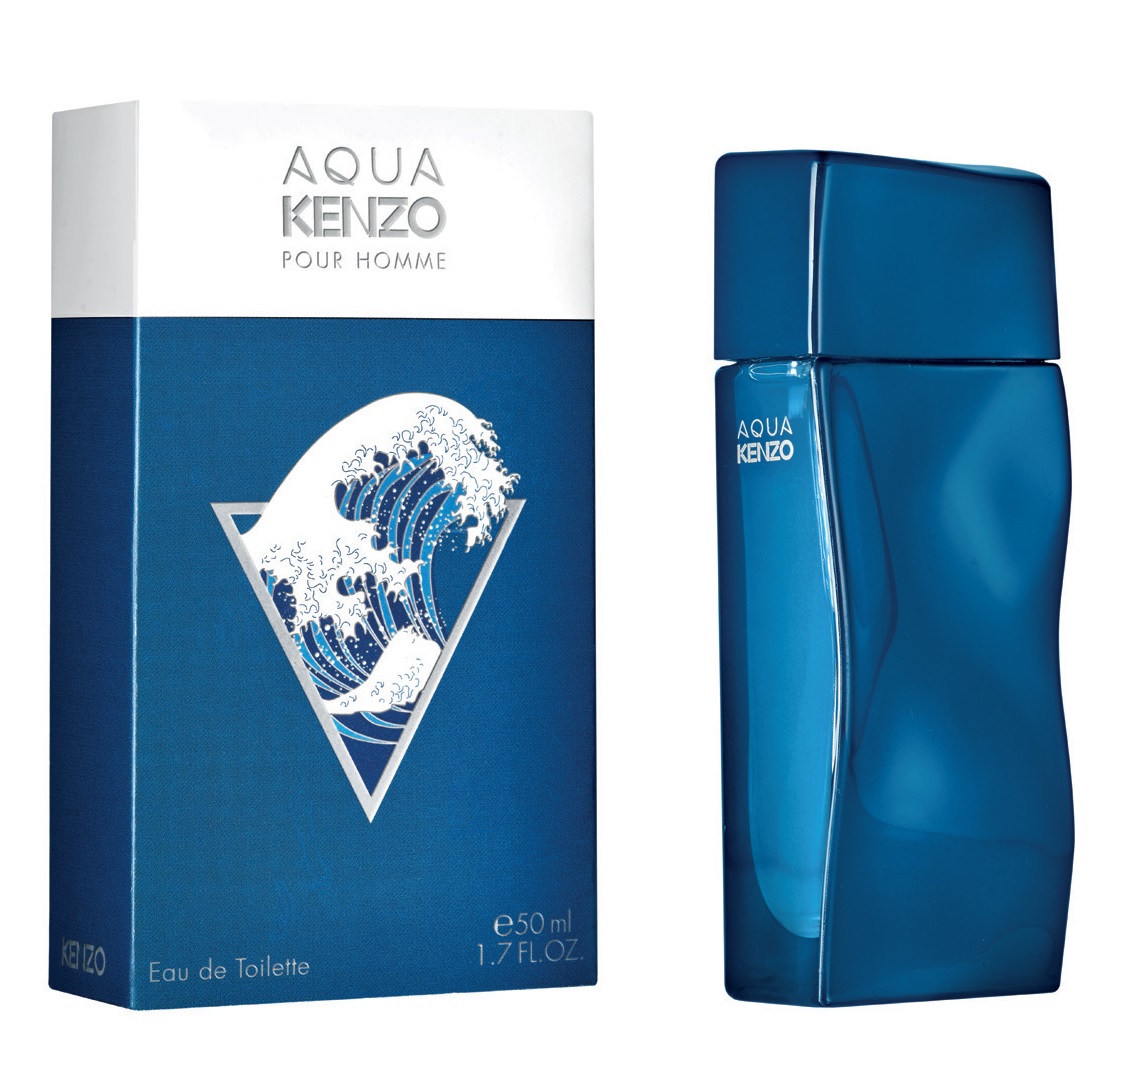 NEW: Kenzo - Aqua Kenzo pour Homme!